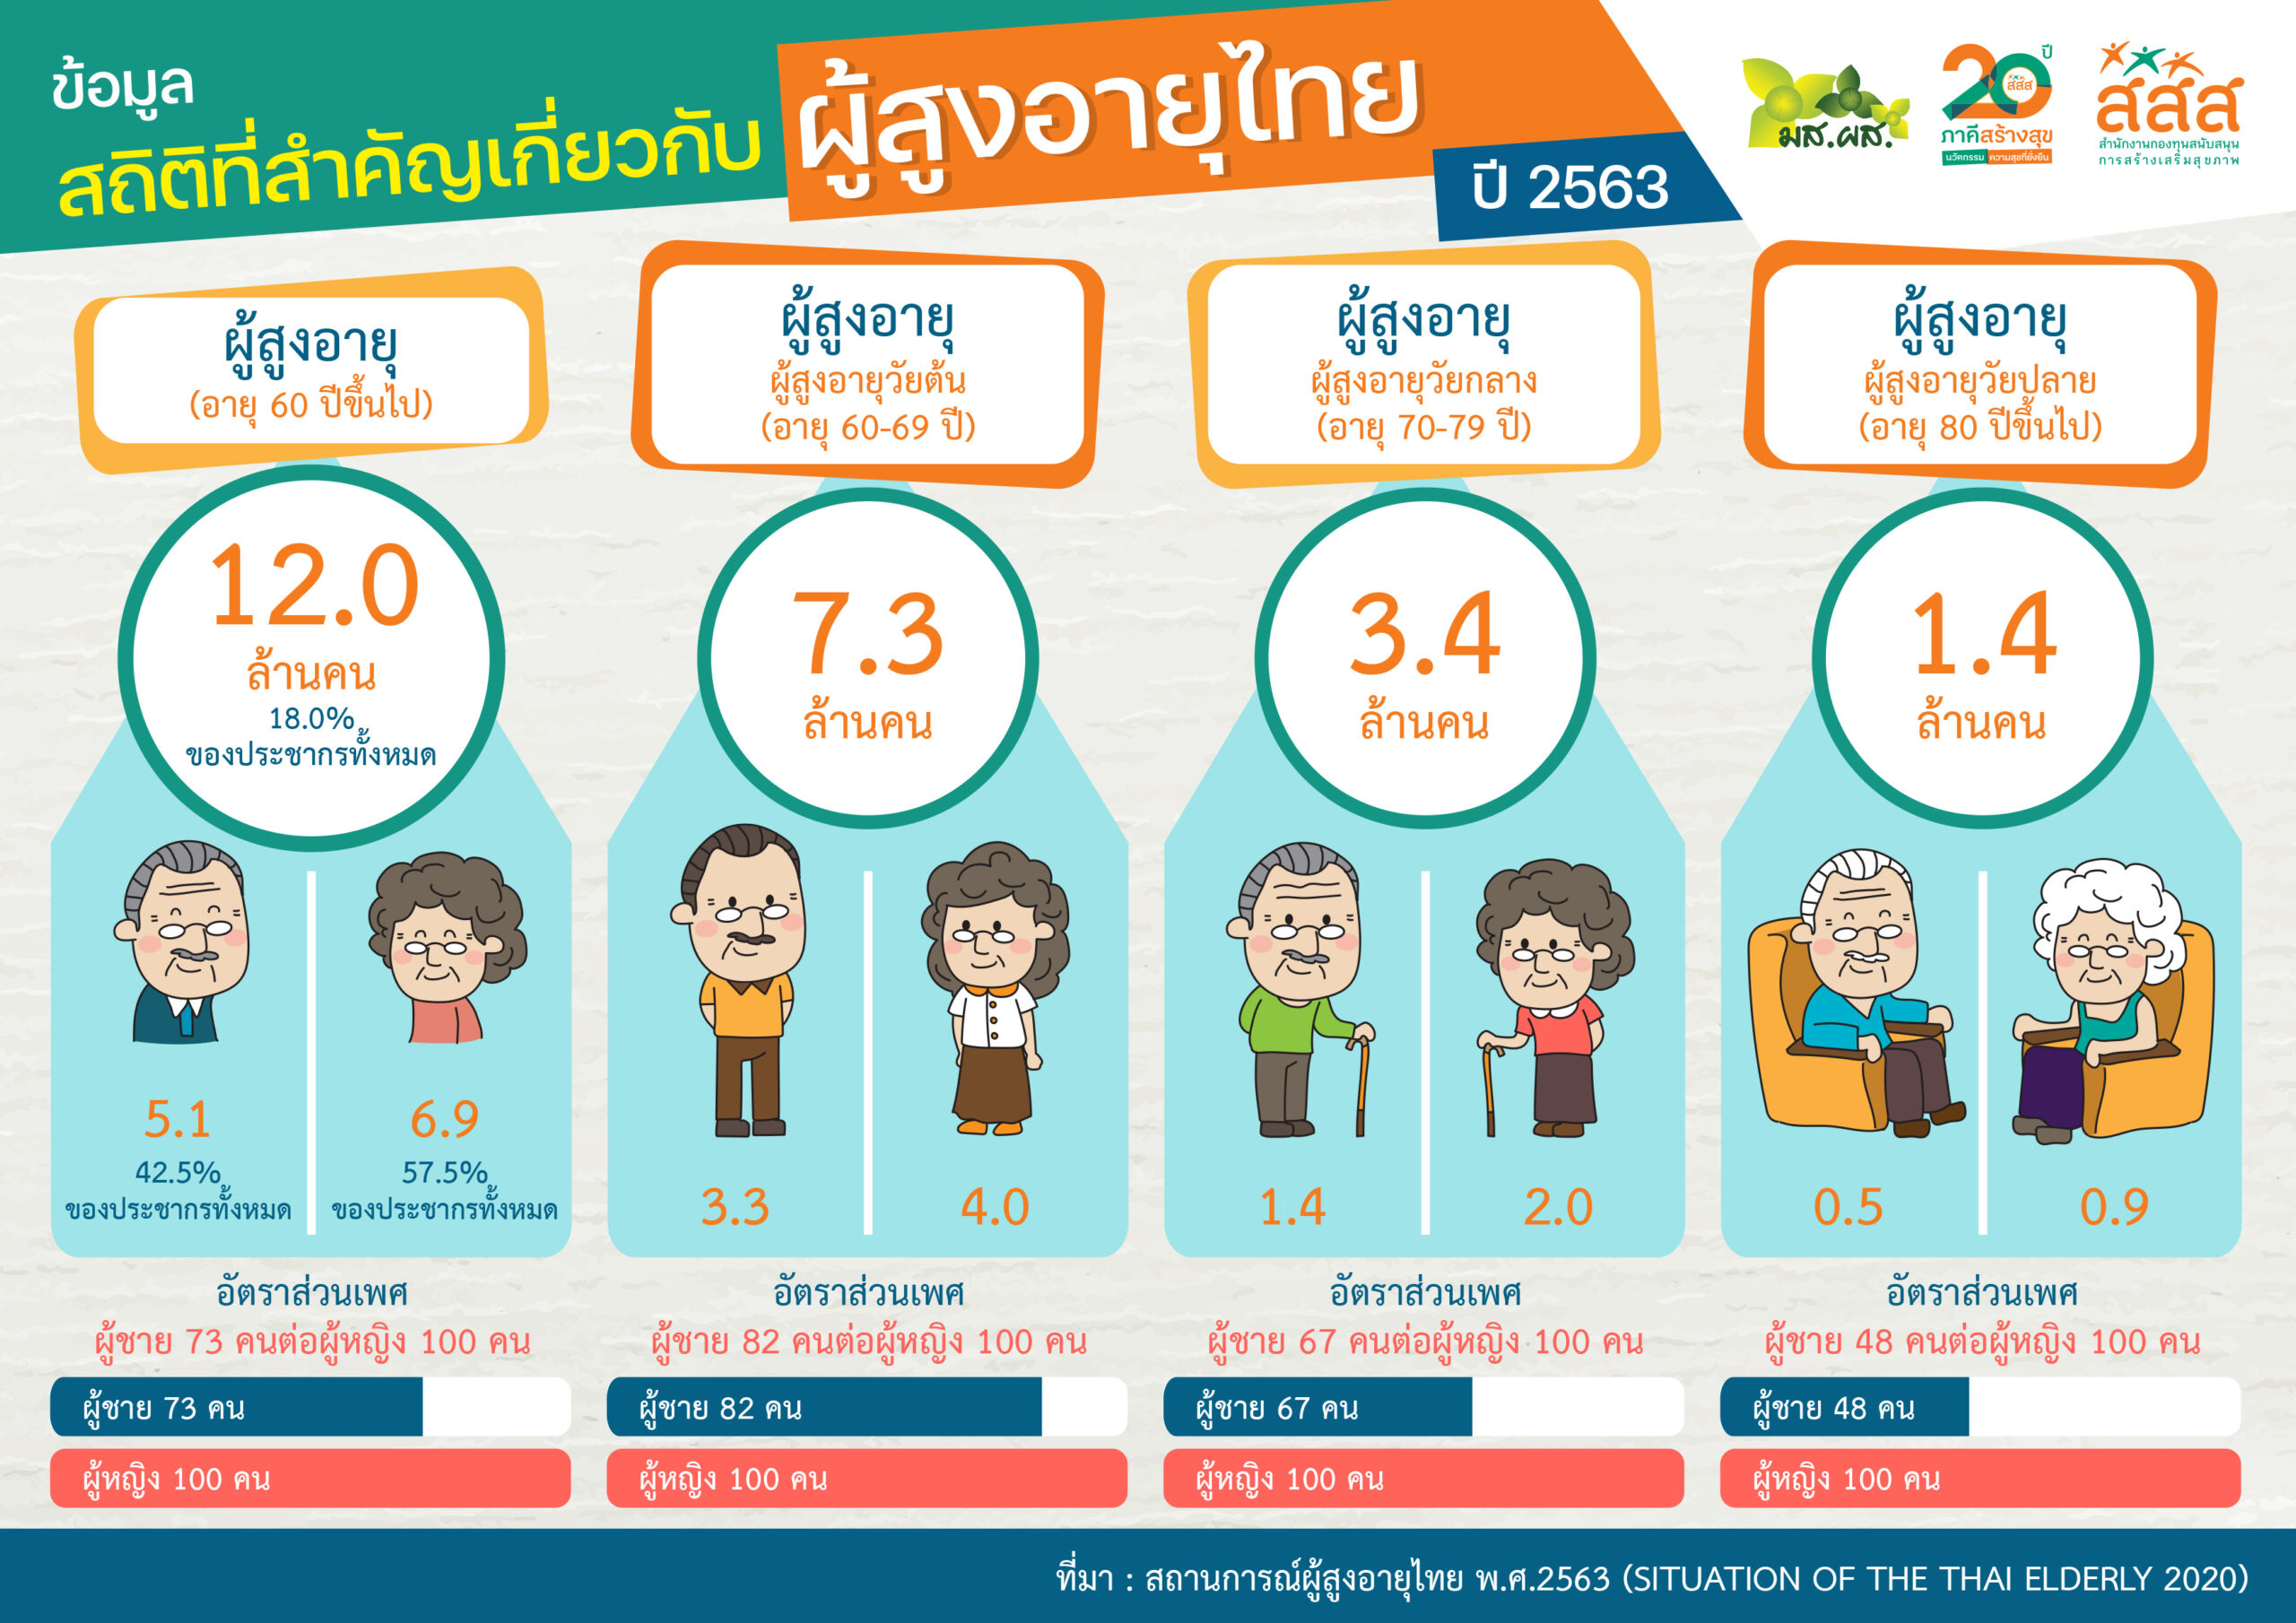 สถิติที่สำคัญเกี่ยวกับผู้สูงอายุไทย ปี 2563